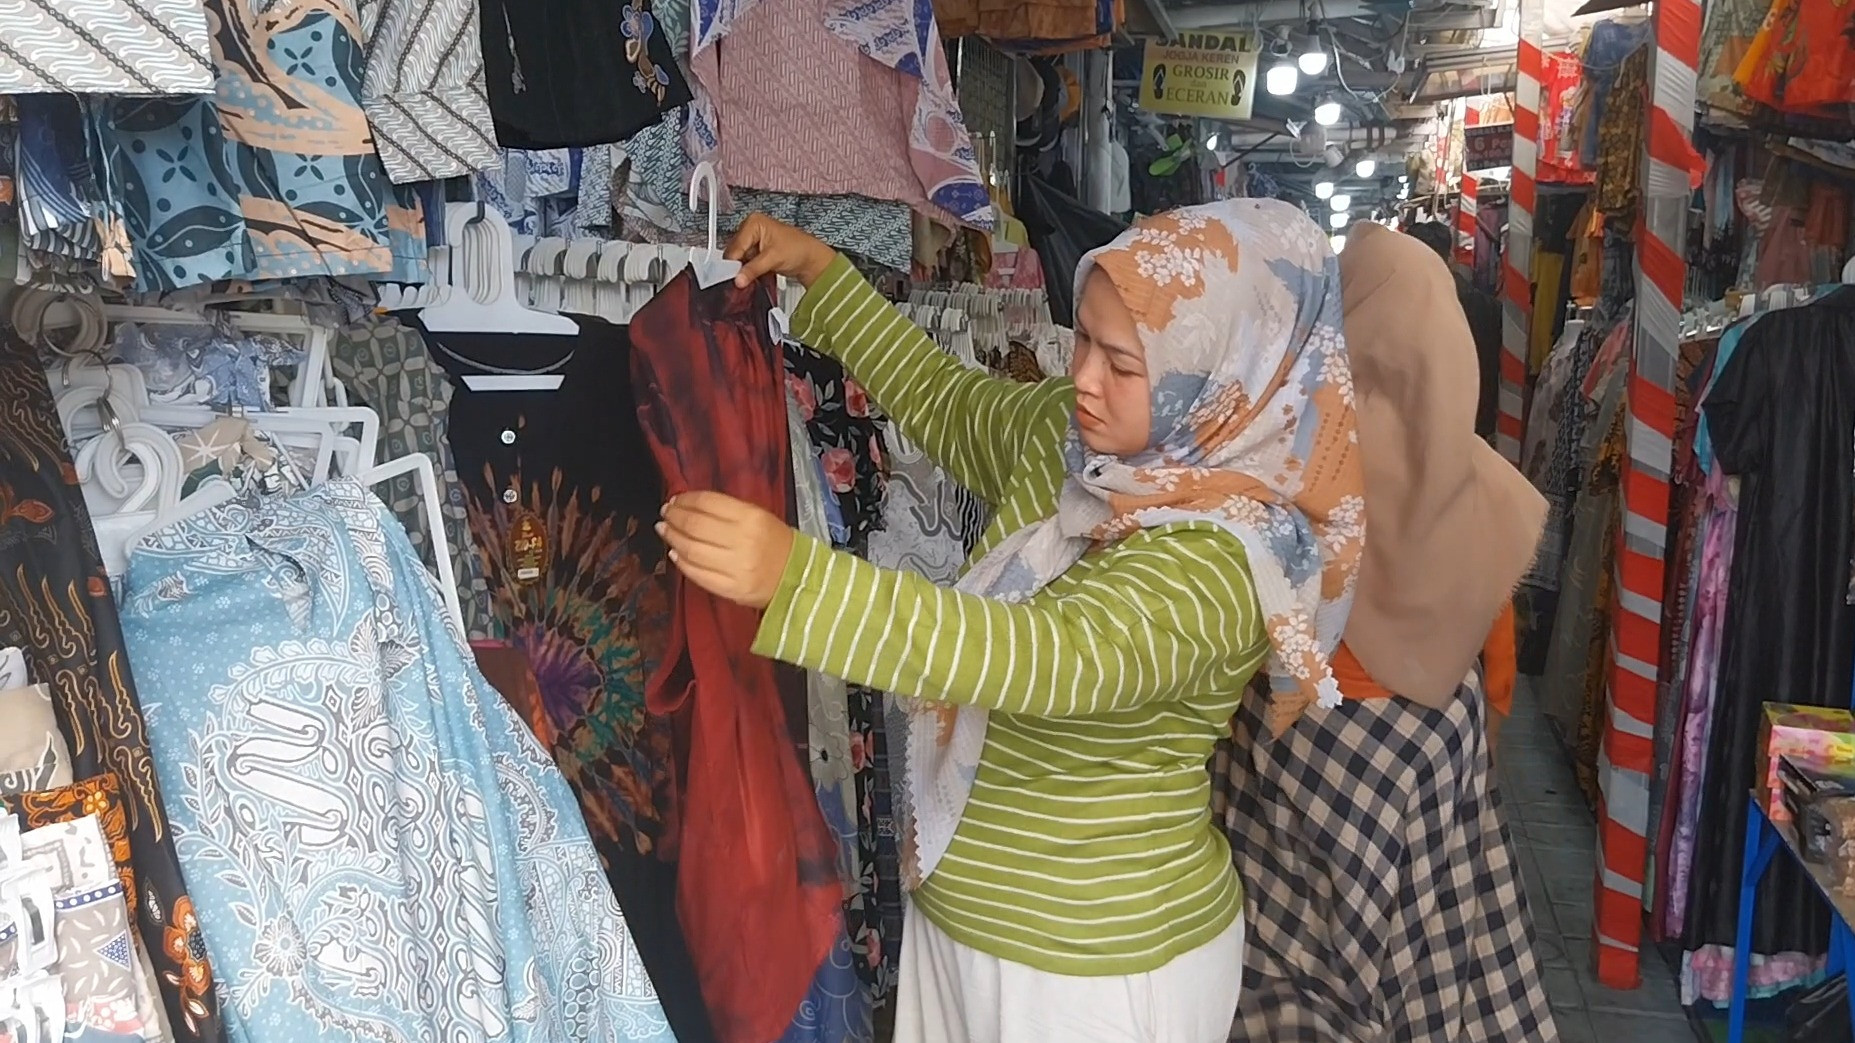 Pembeli memenuhi kawasan Teras Malioboro untuk berbelanja berbagai oleh oleh khas hingga aksesoris unik khas Yogyakarta.